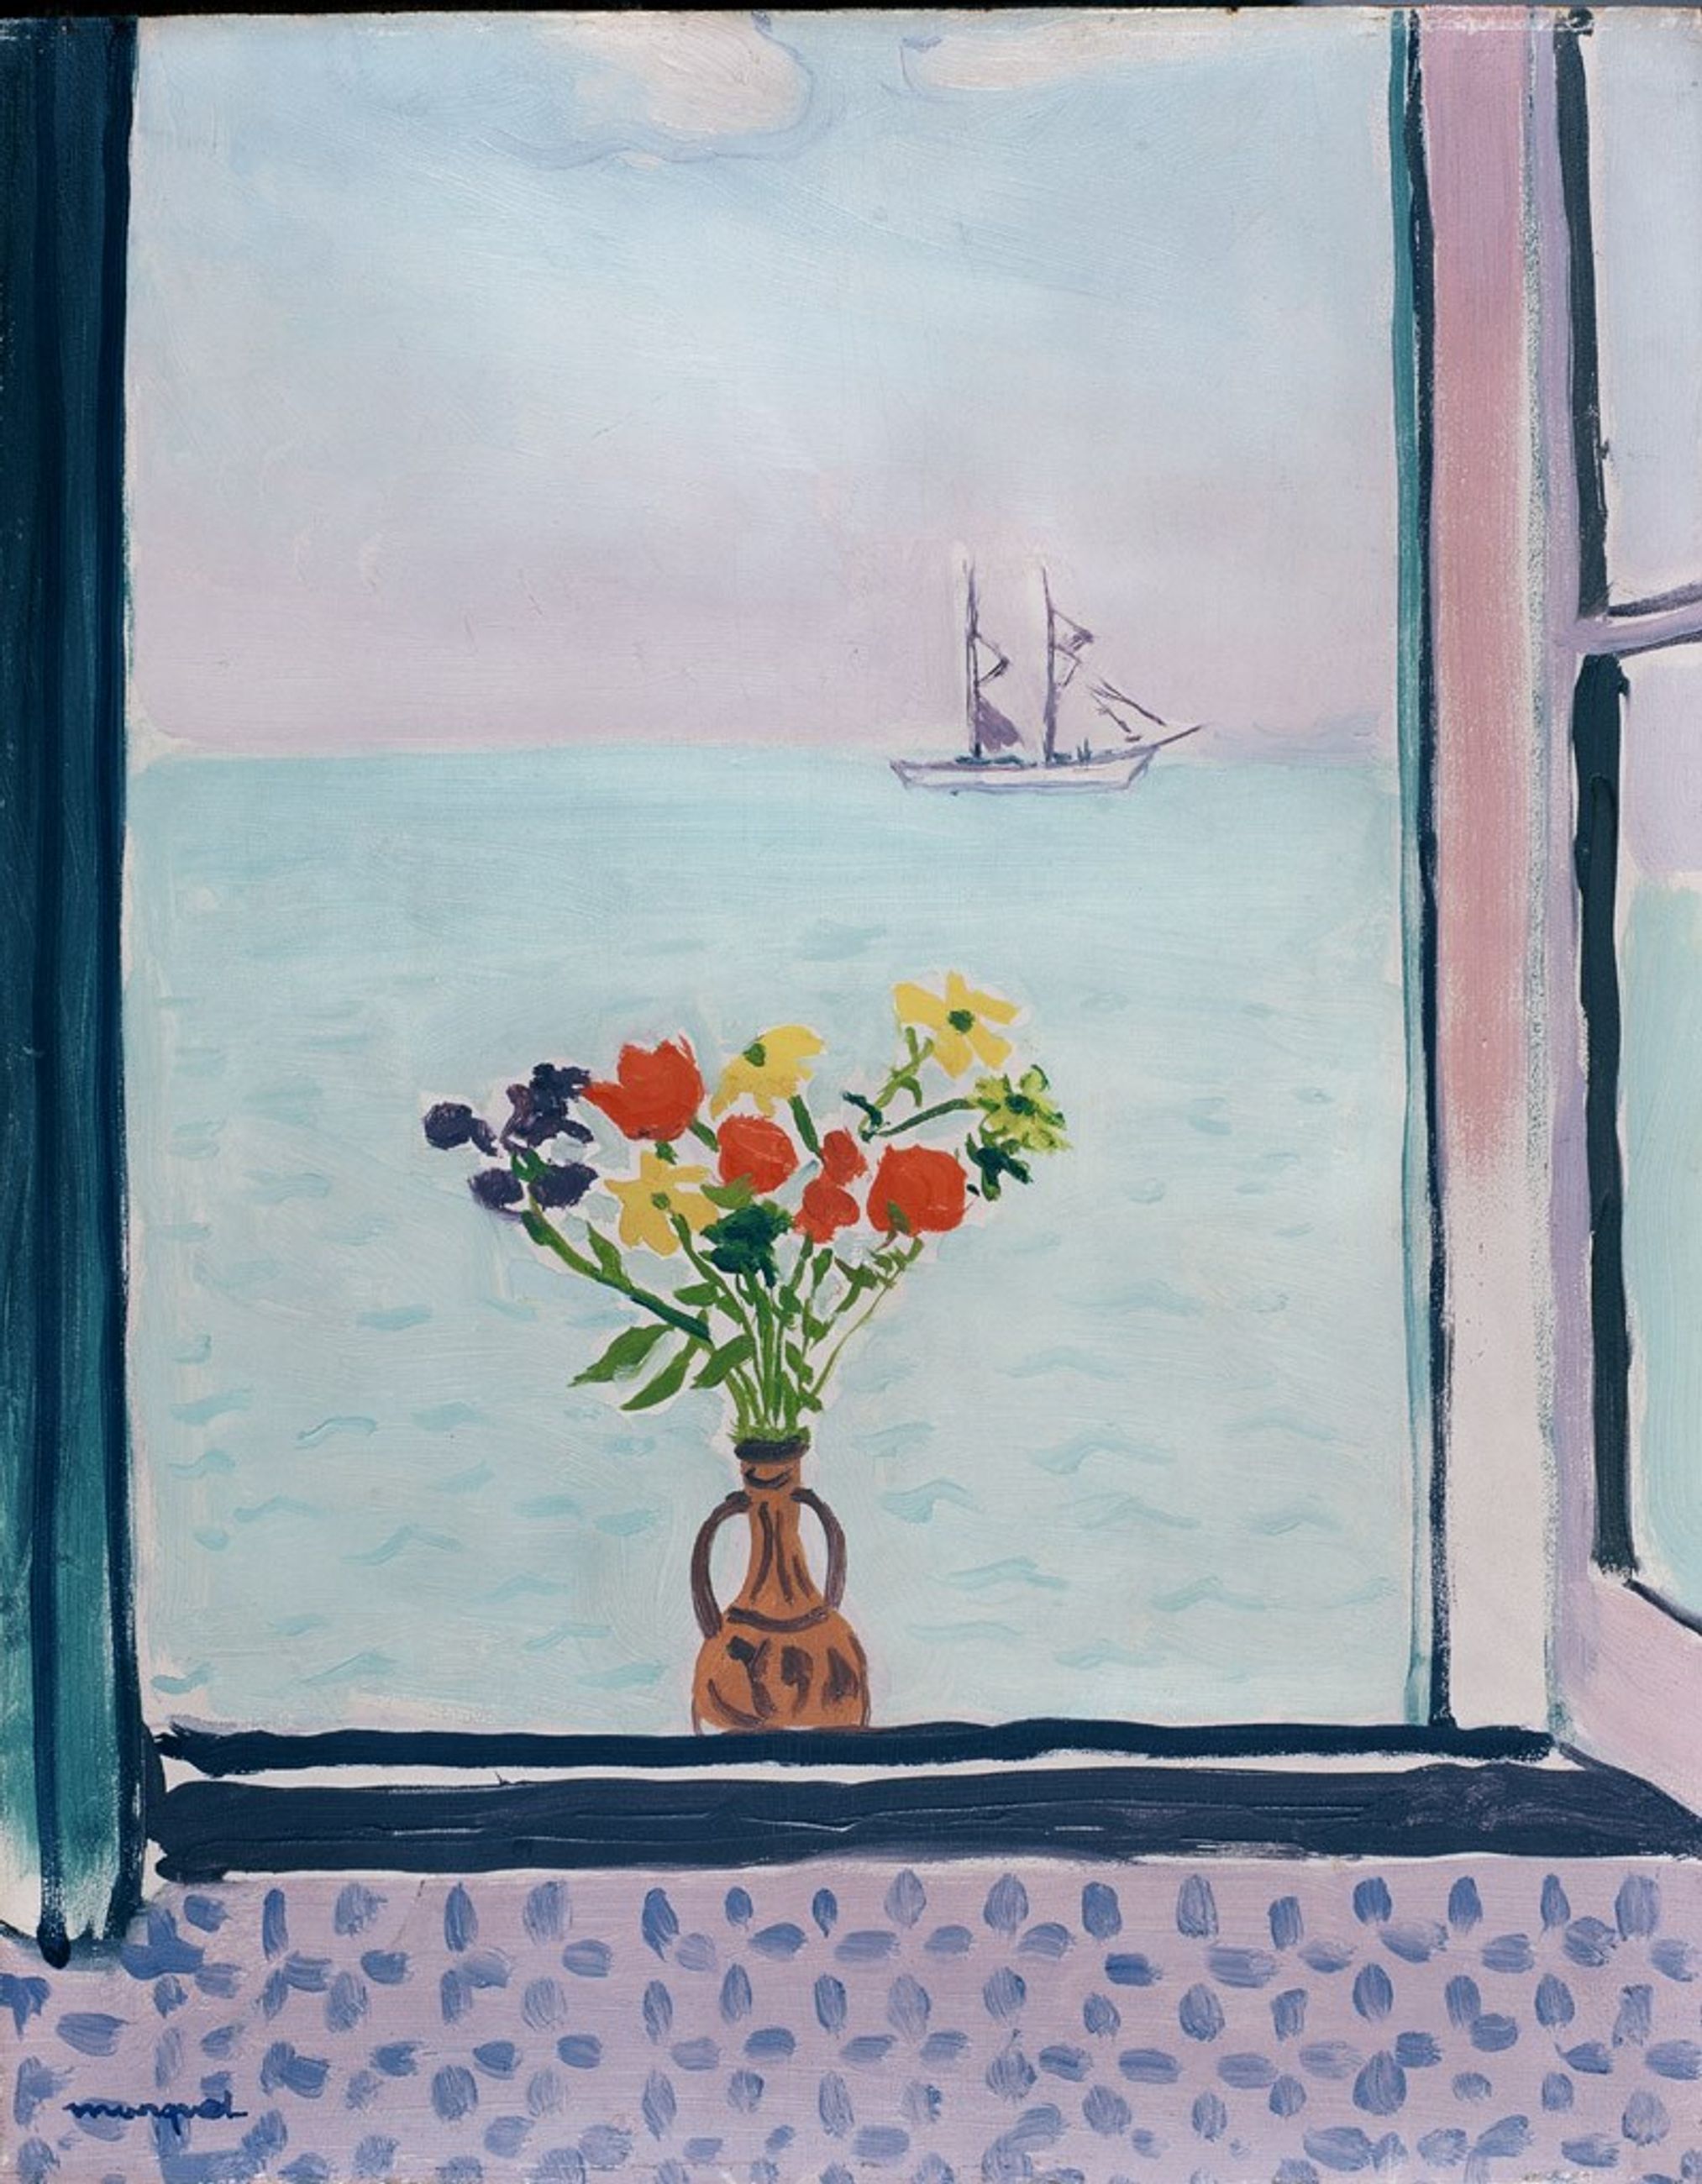 النافذة في حلق الوادي by Albert Marquet - 1926 - الأبعاد: 54.5 × 41.1 سم 